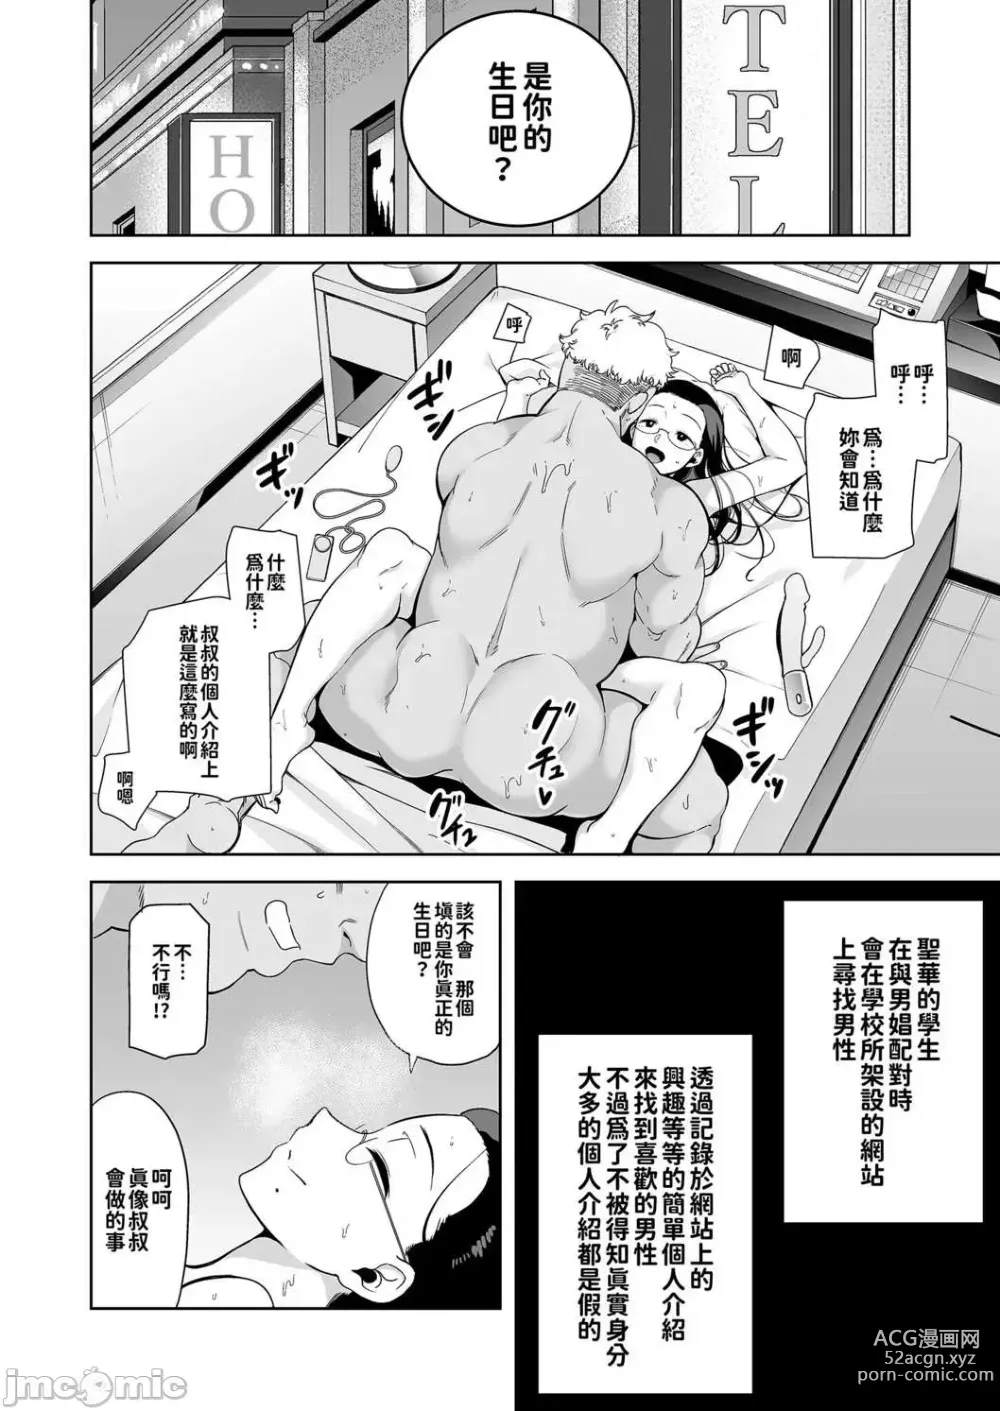 Page 3 of doujinshi dZCZsdfgsd3